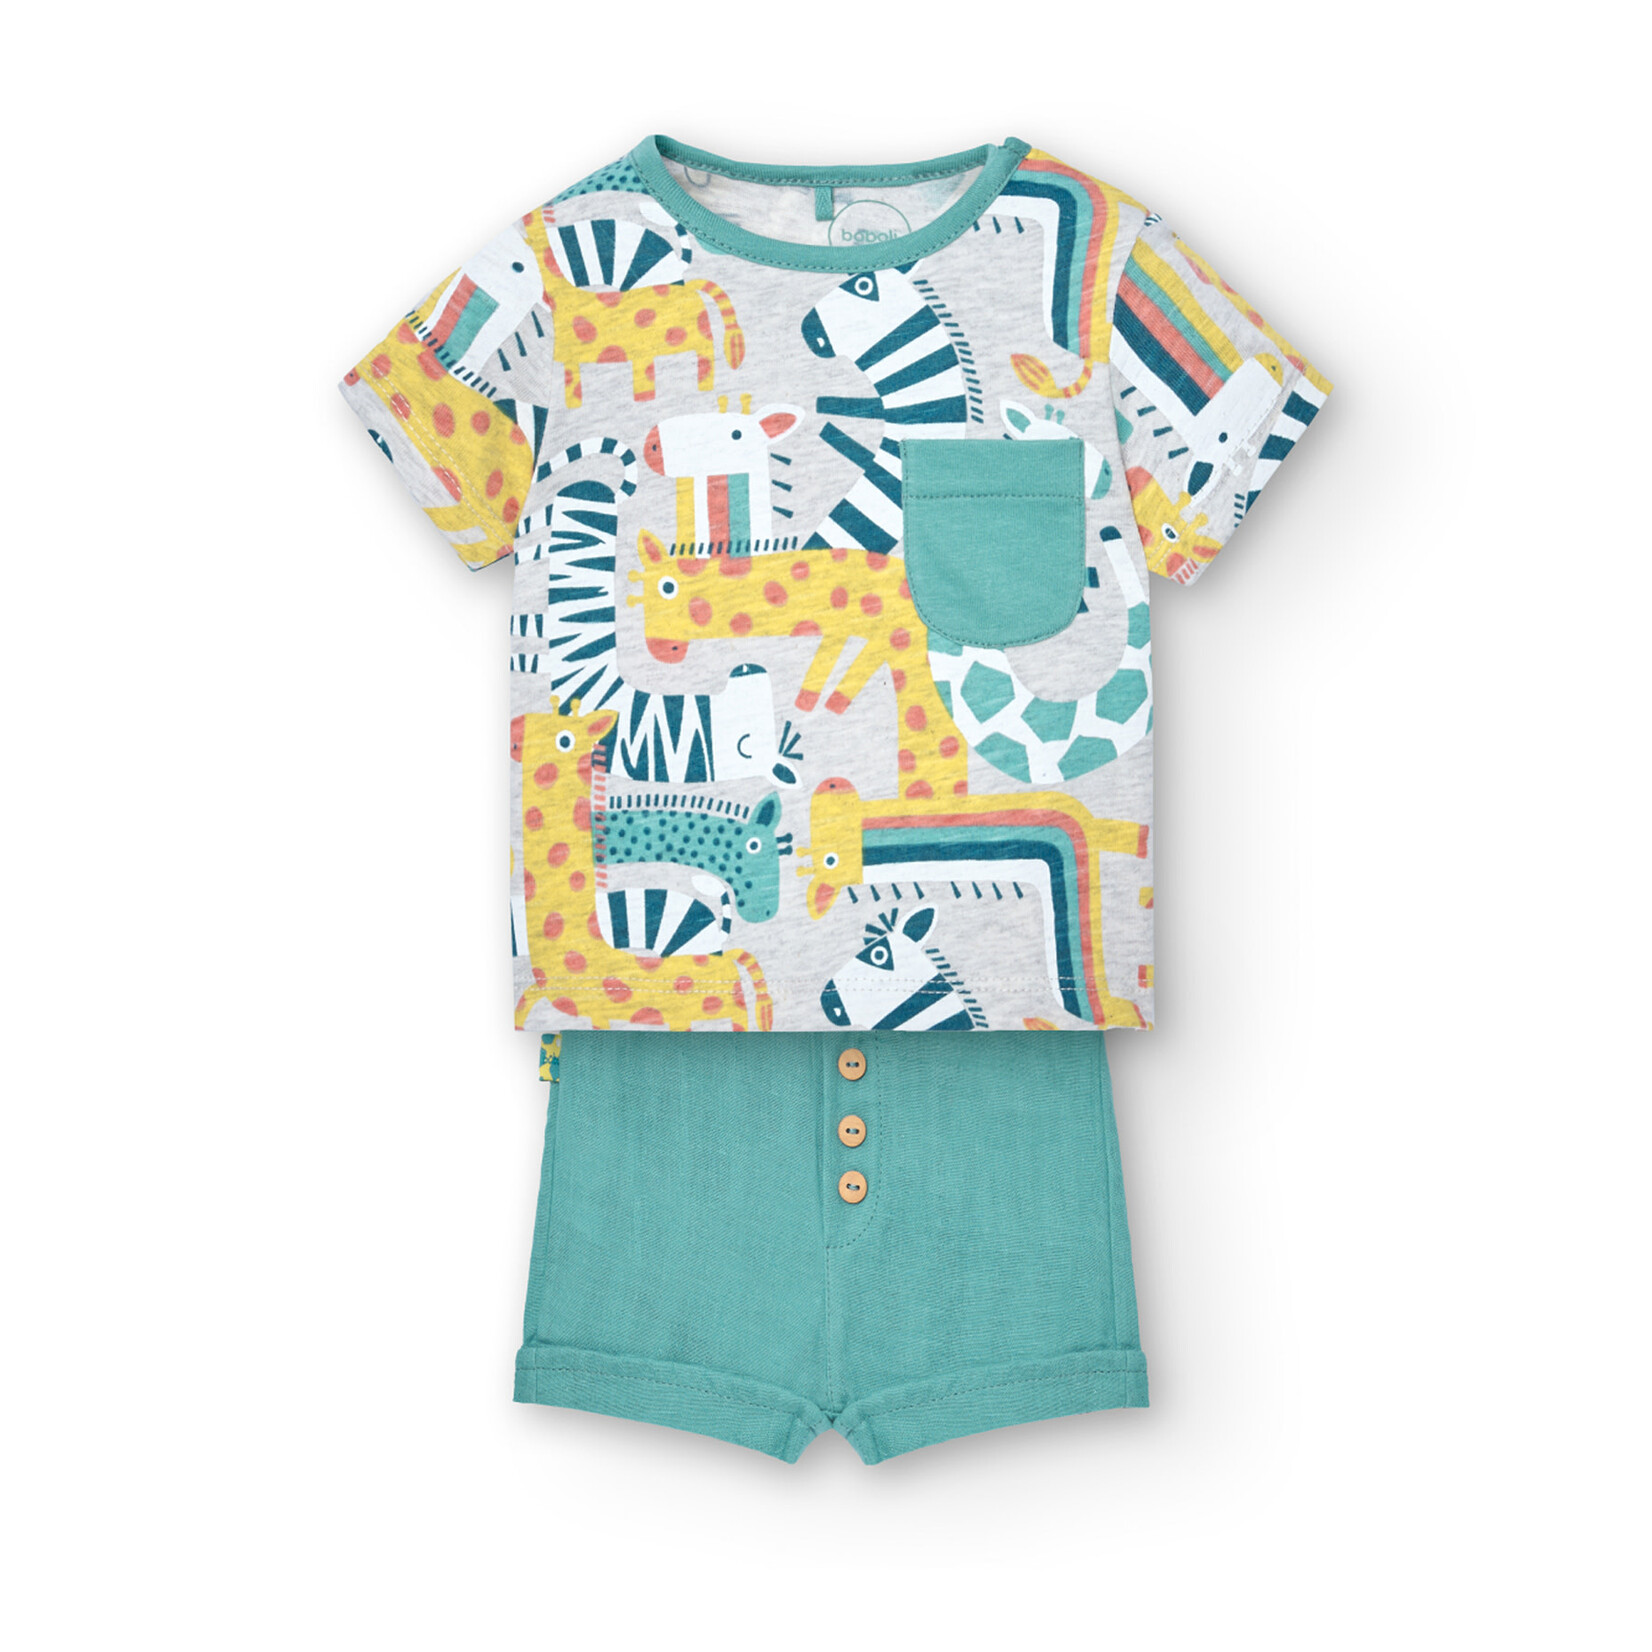 Boboli BOBOLI - Two-piece set - Shortsleeve t-shirt with safari animal print and turquoise shorts